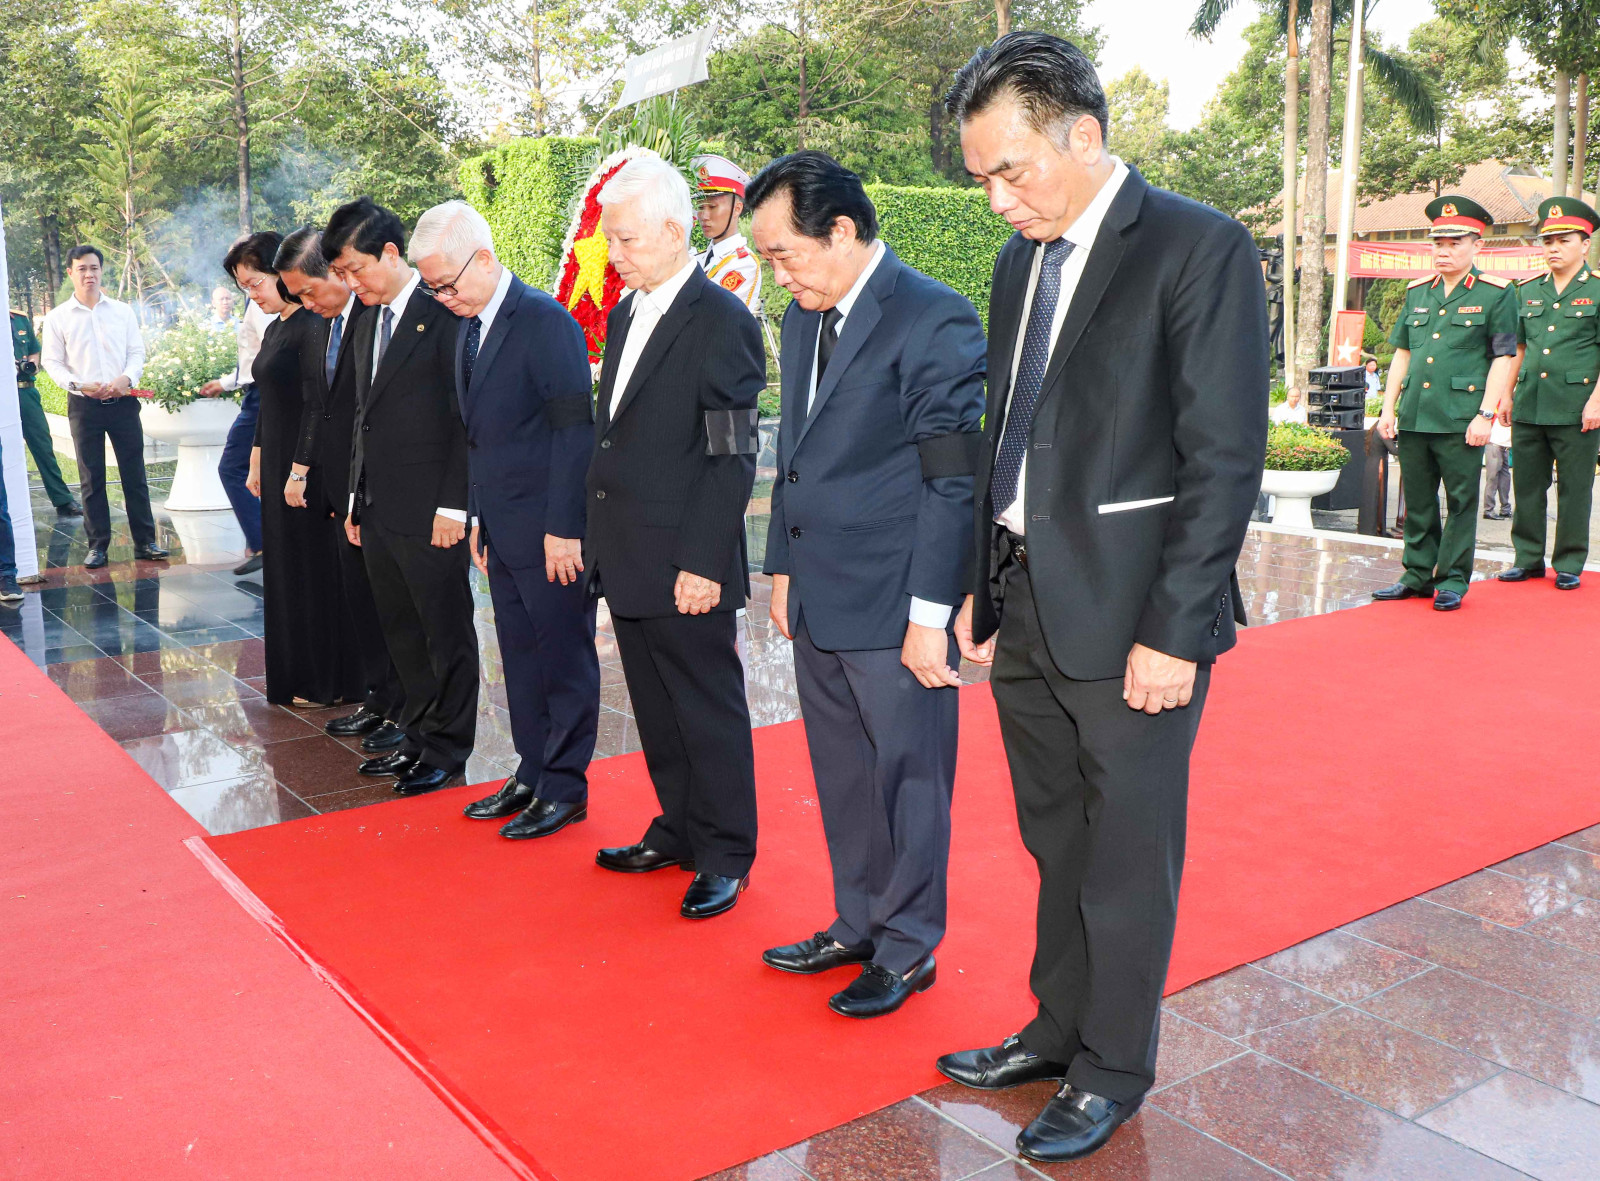 Nguyên Chủ tịch nước Nguyễn Minh Triết cùng lãnh đạo tỉnh Bình Dương dâng hoa, dâng hương, phút mặc niệm tưởng nhớ các anh hùng liệt sĩ (Ảnh: Quốc Chiến).